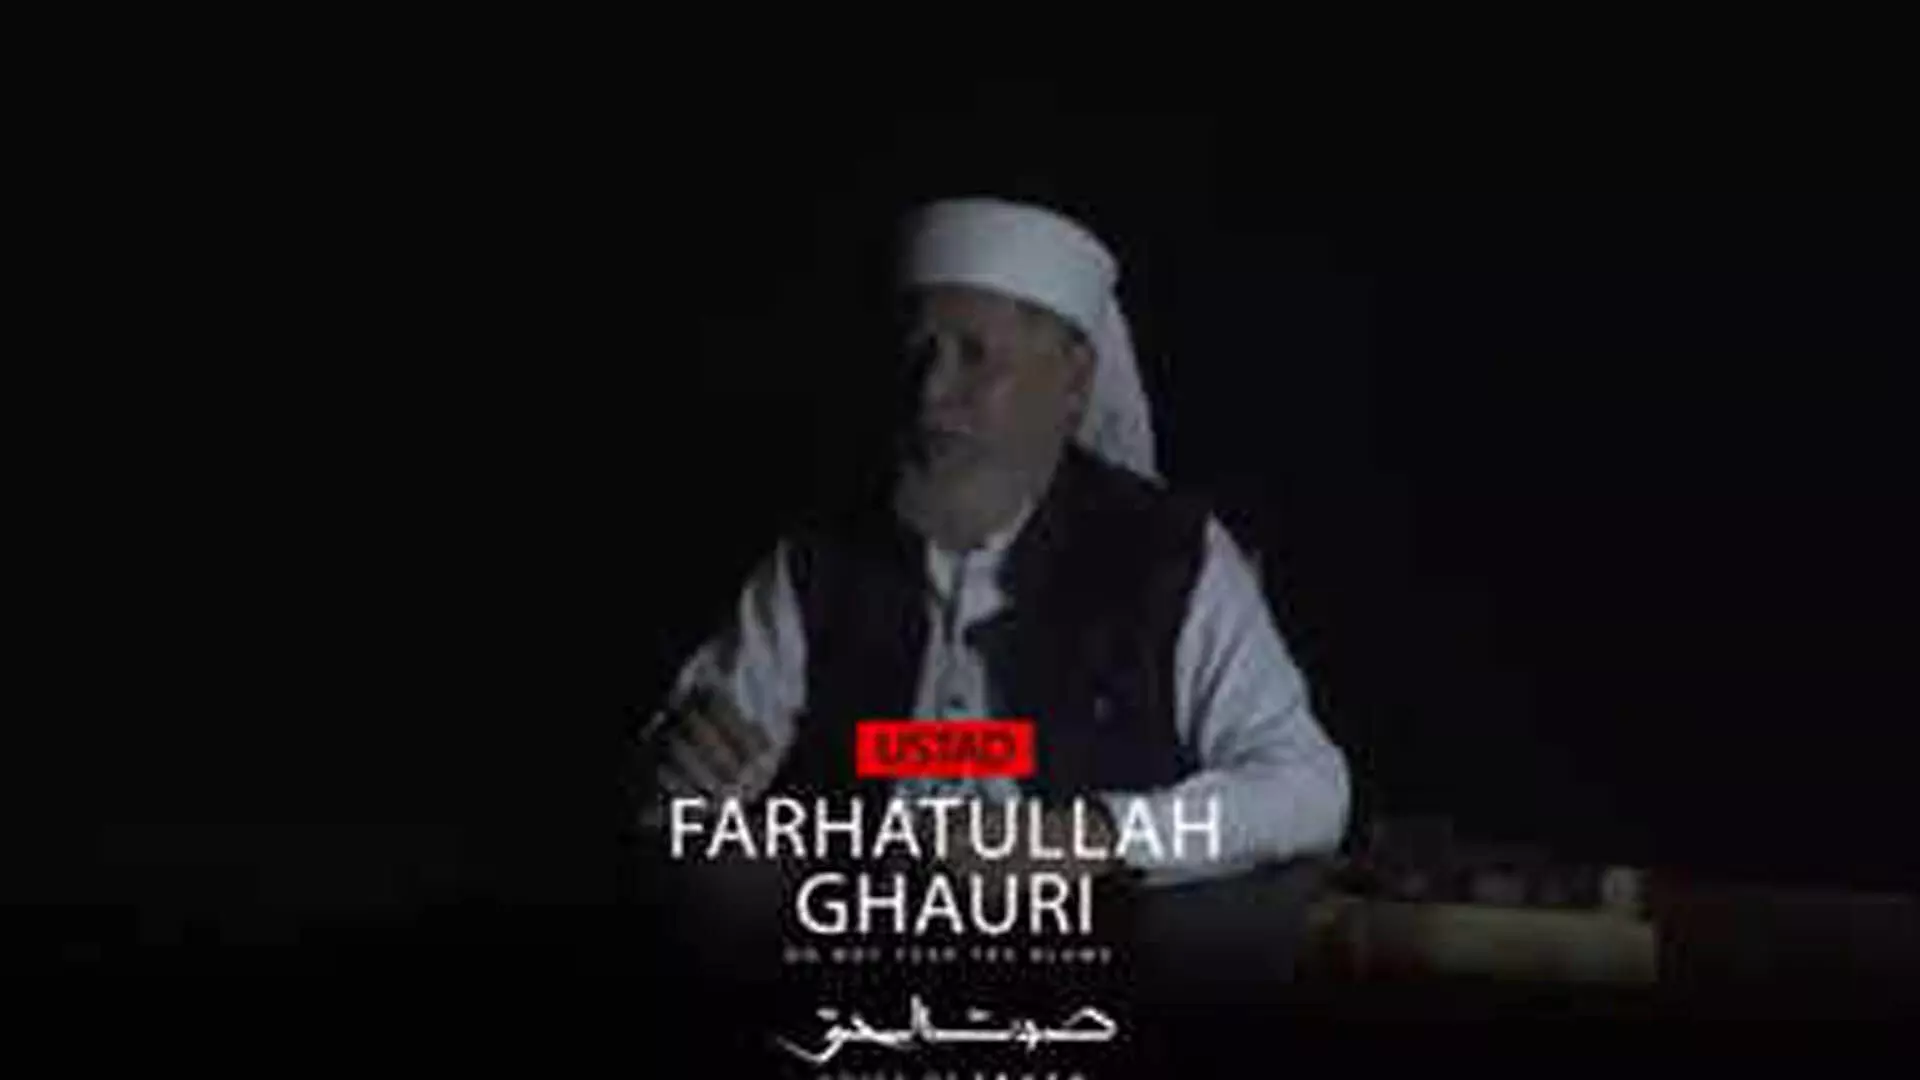 ISI साजिश, अक्षरधाम हमले का मायावी मास्टरमाइंड फरहतुल्ला गोरी वीडियो में